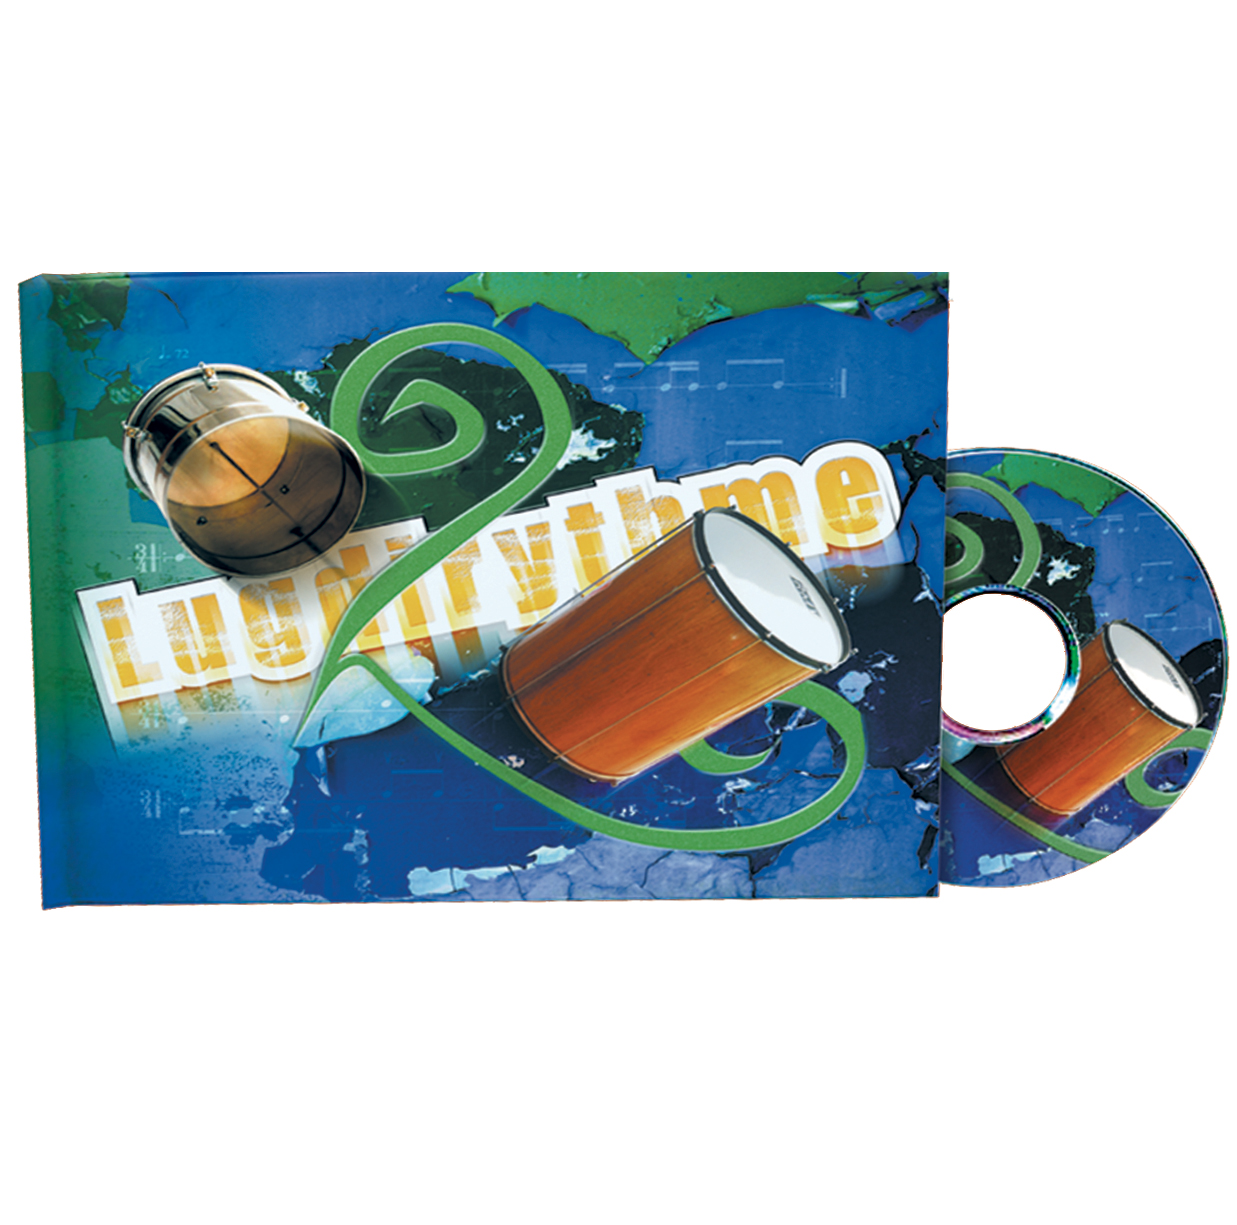 Lugdirythme 5 - Livre + CD